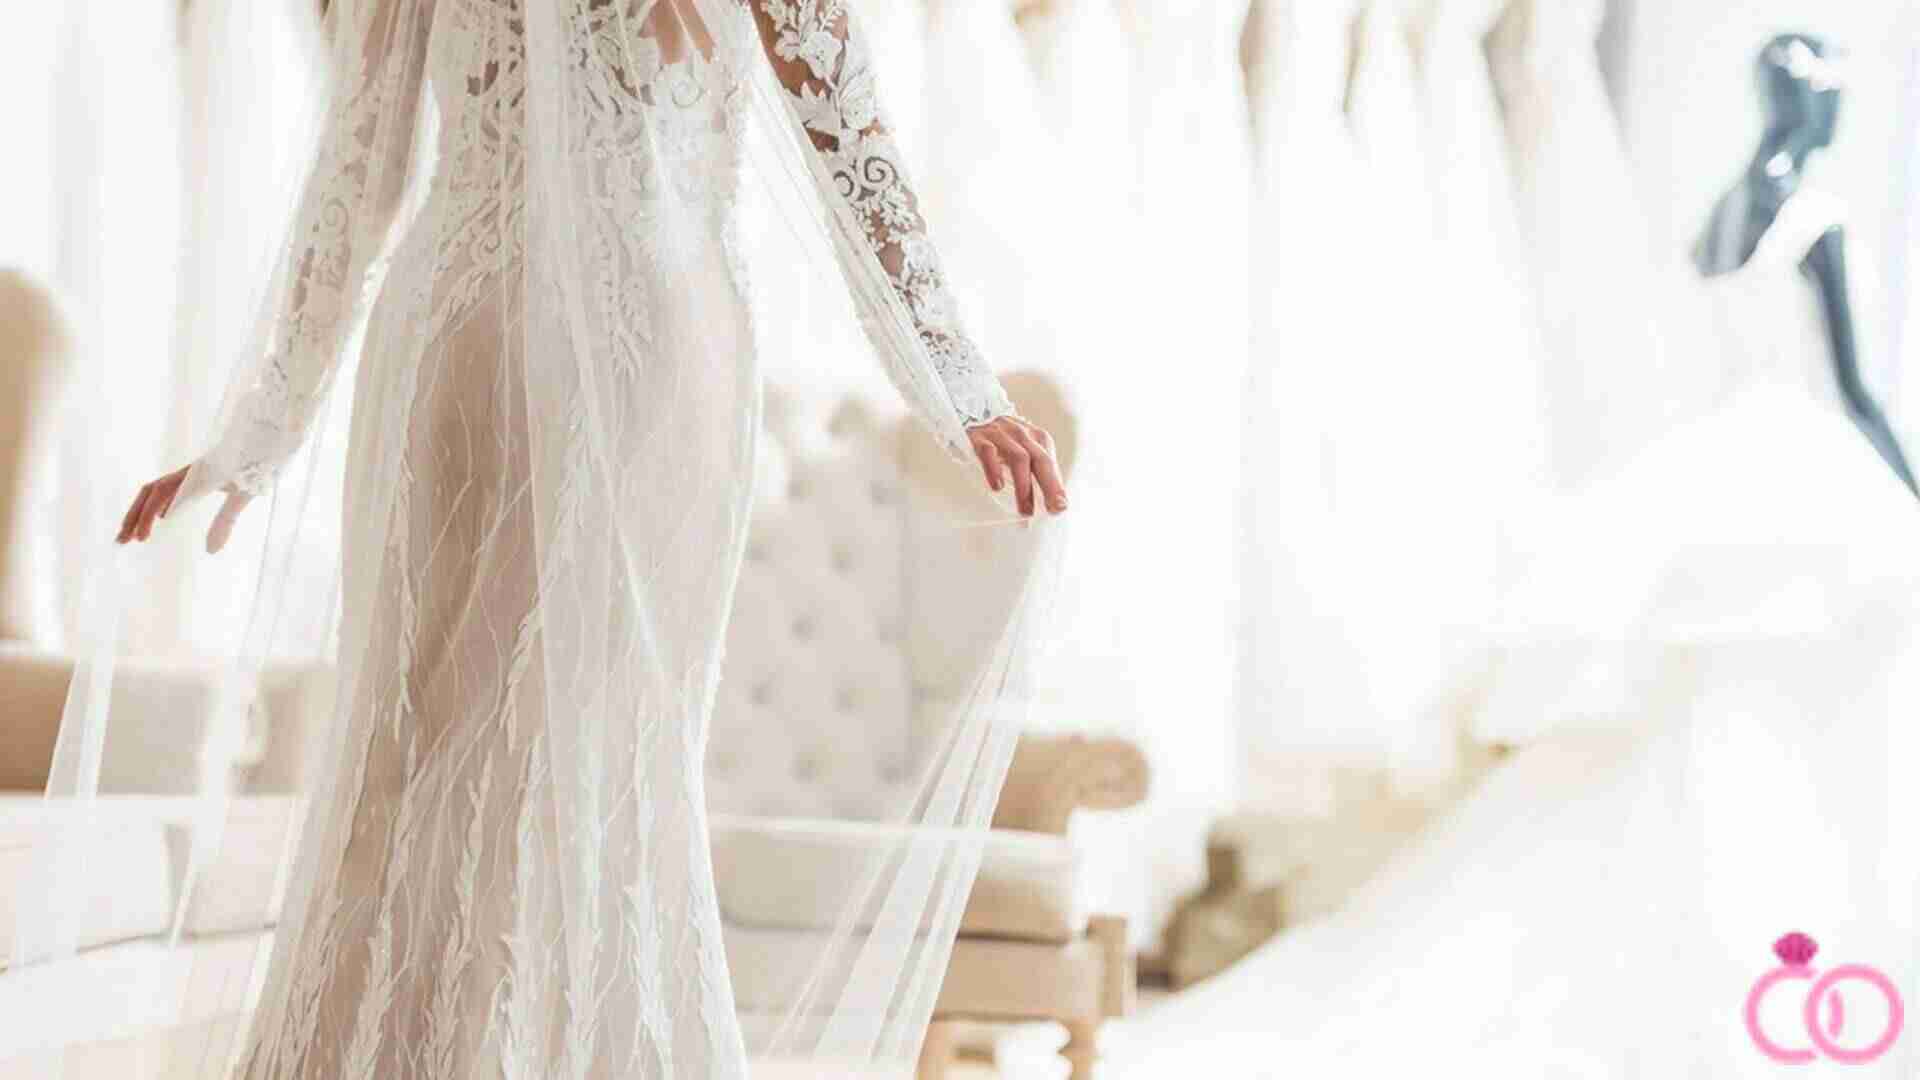 مزون لباس عروس در غرب تهران